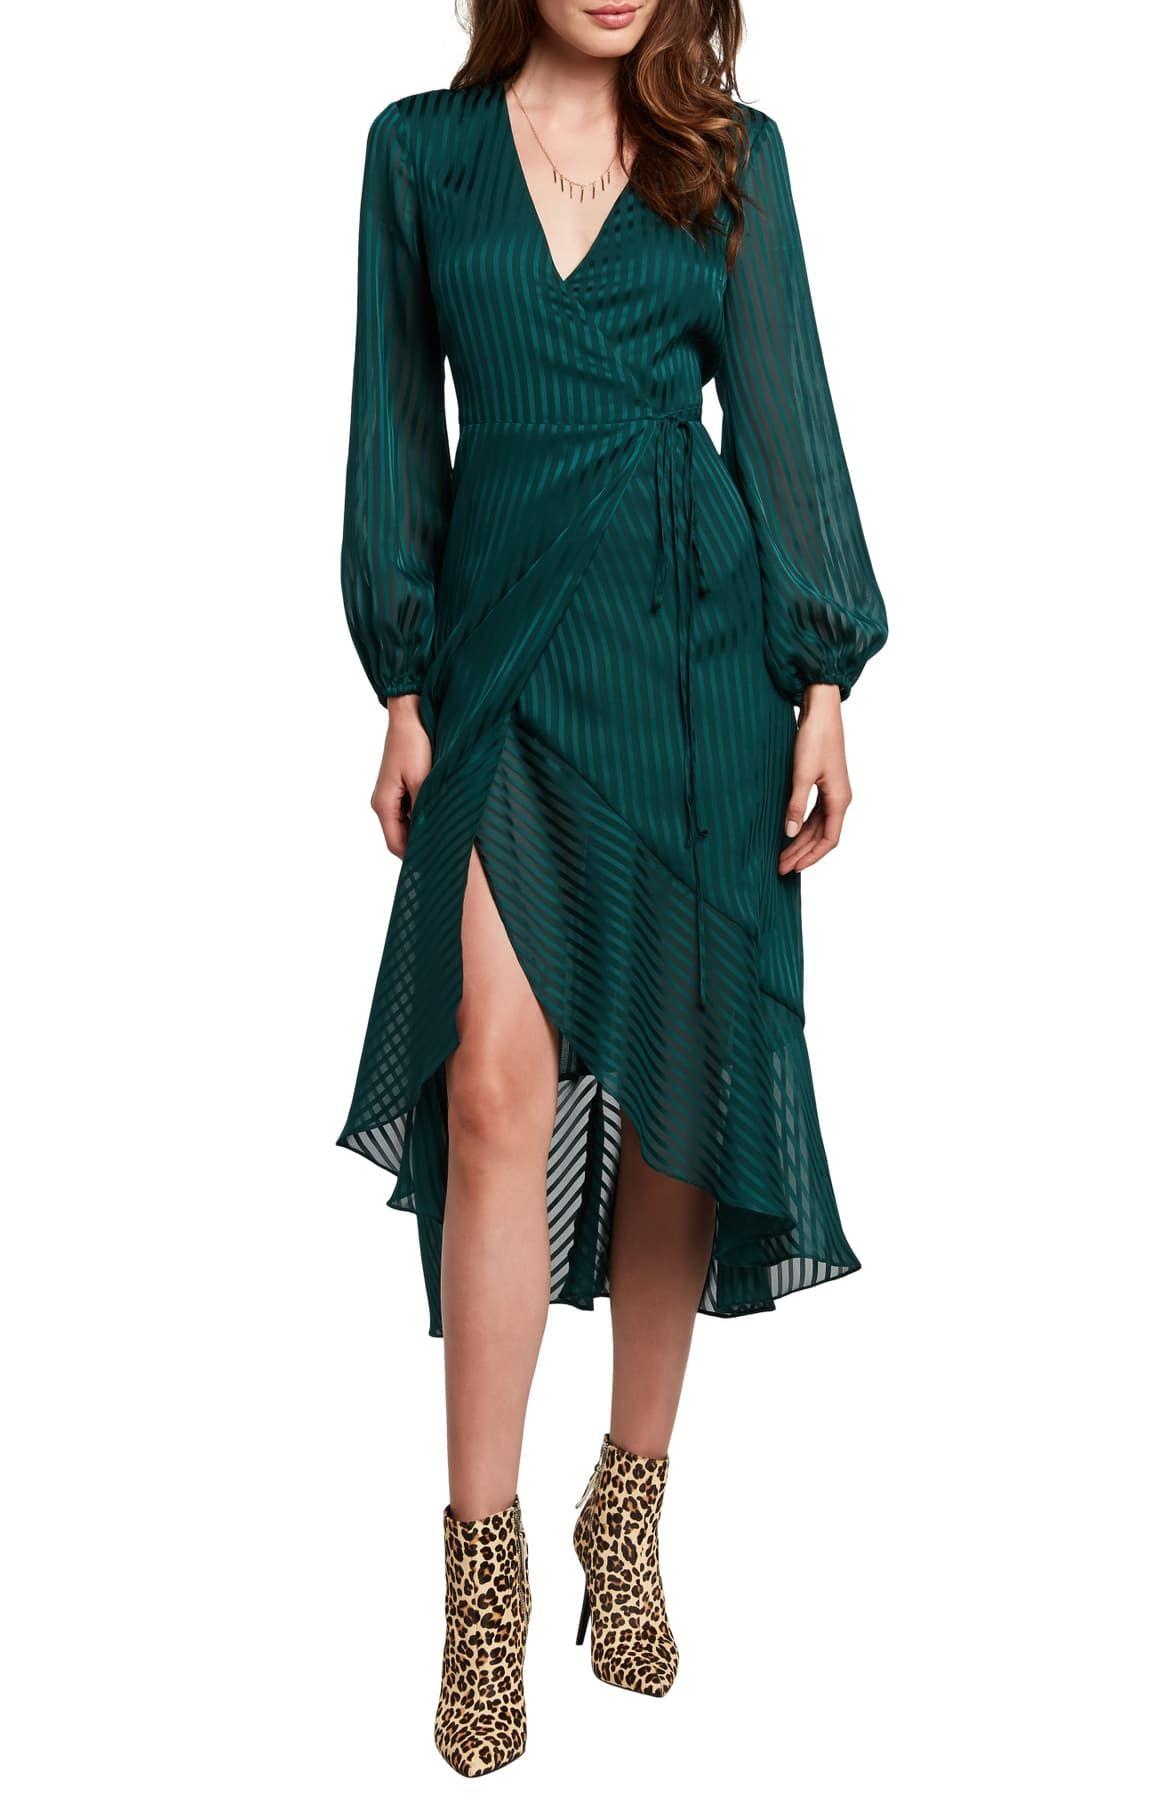 midi wrap dress green Big sale - OFF 62%